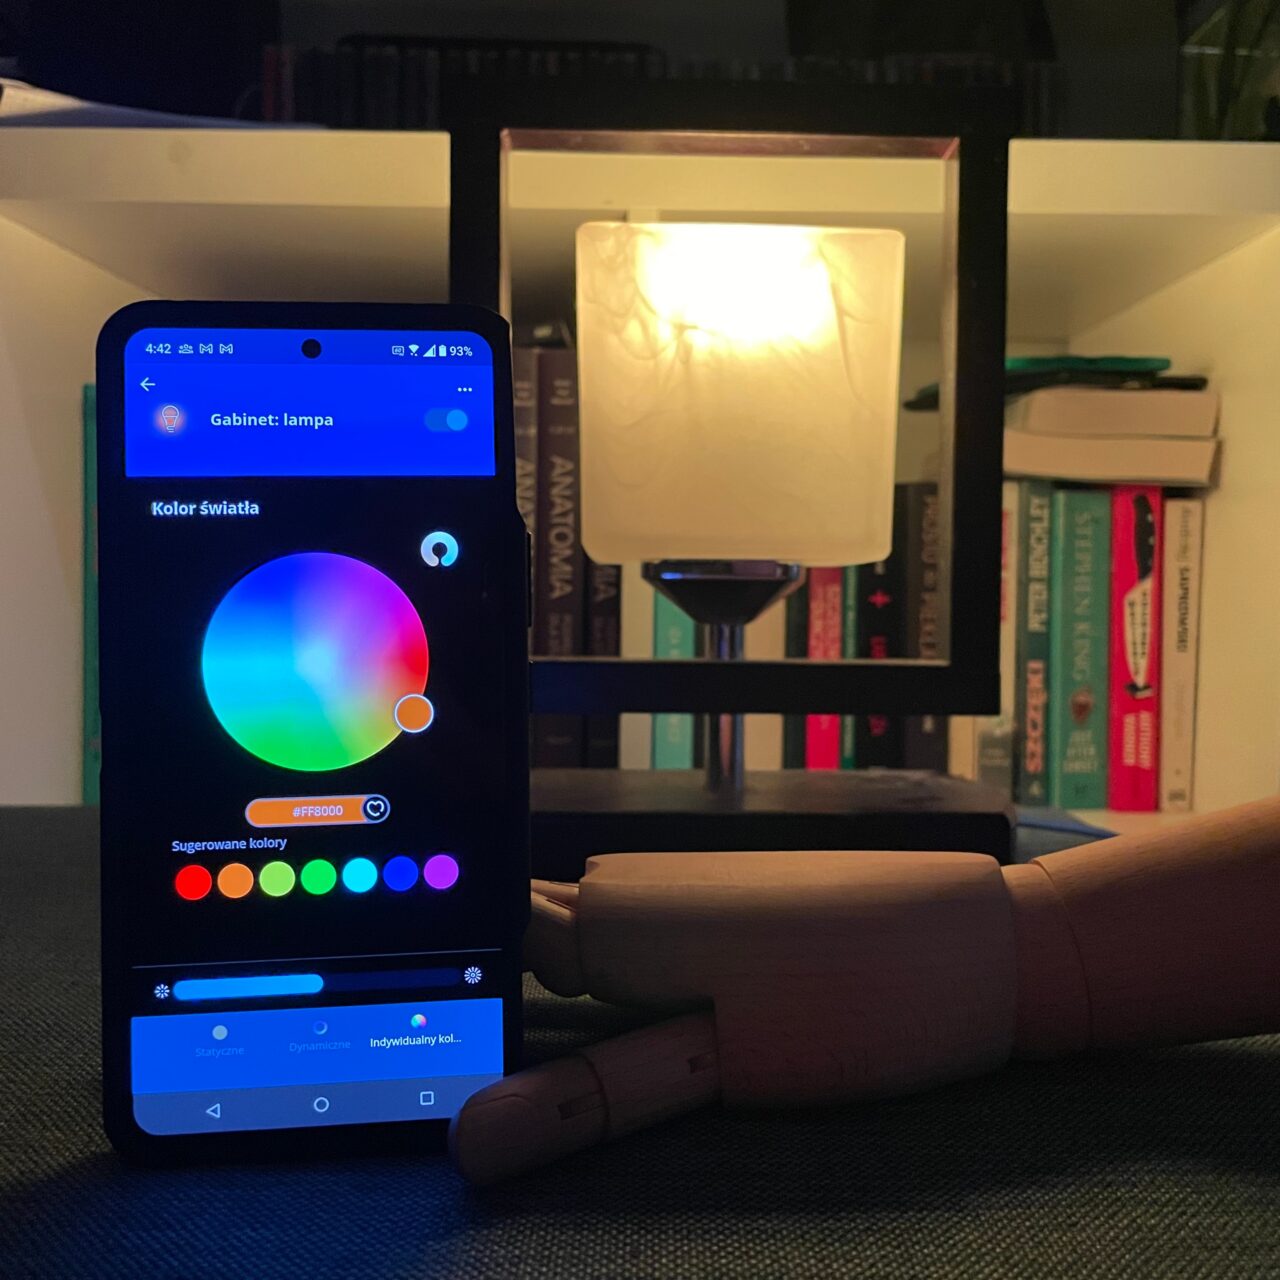 Inteligentny telefon wyświetlający aplikację do sterowania kolorami lampy, umieszczony przy włączonej lampce na tle półki z książkami.